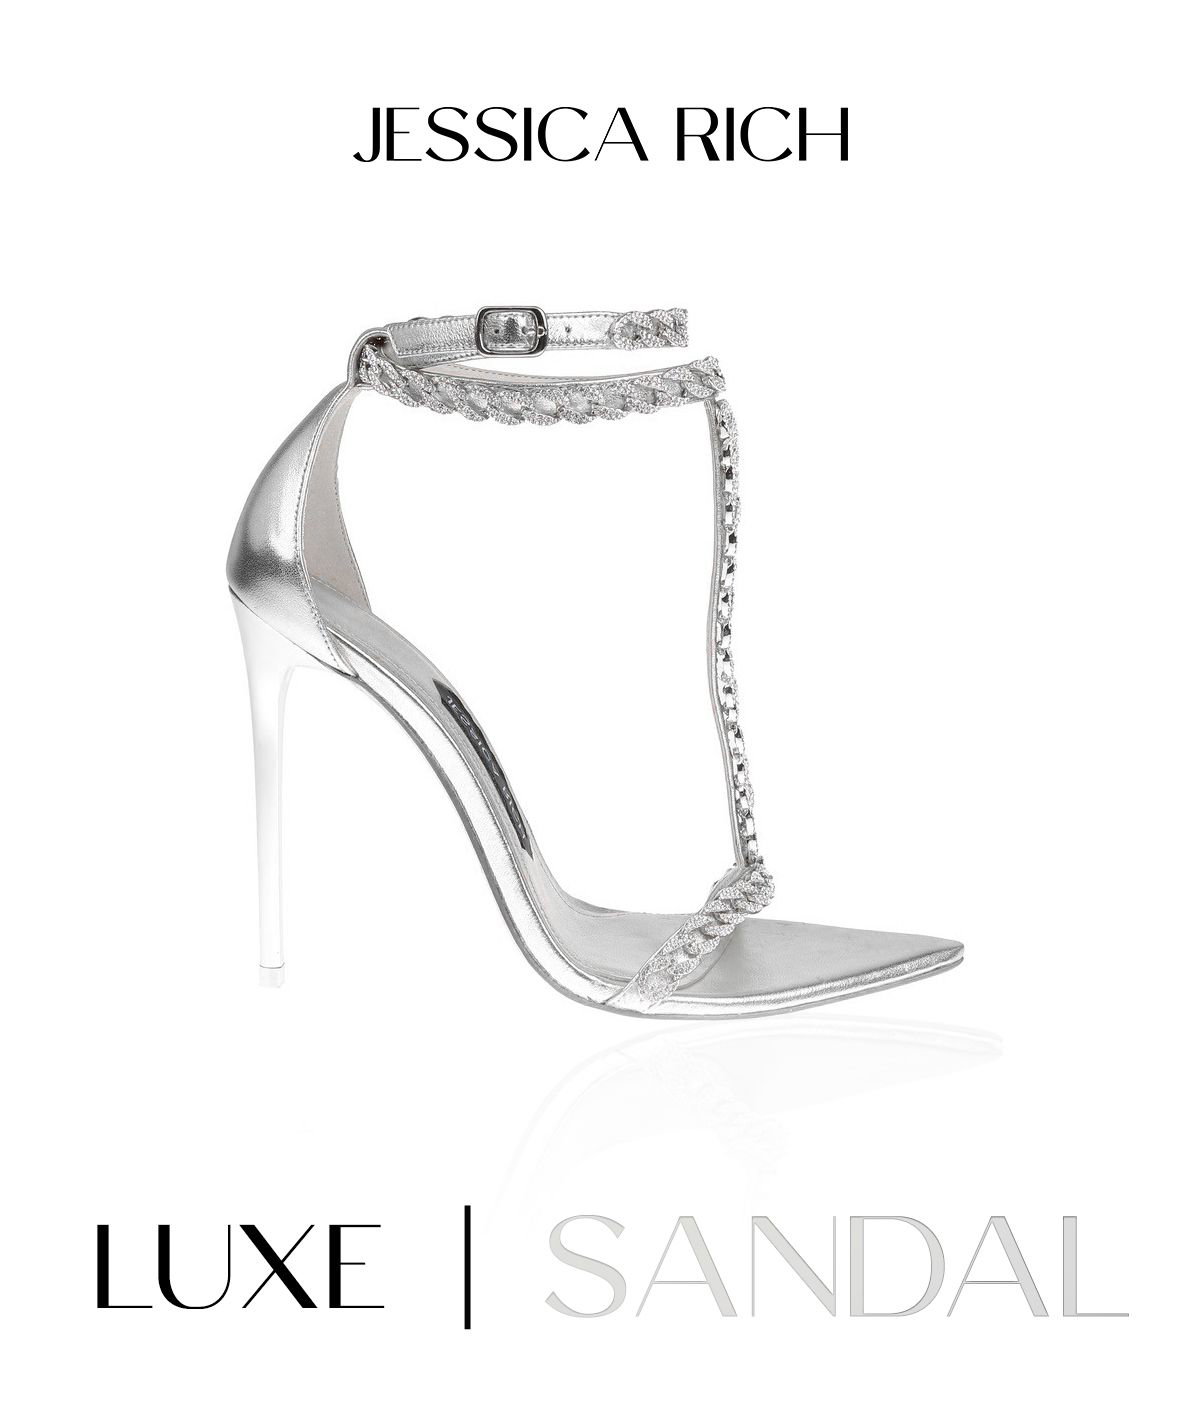 Jessica Rich mang đến cho bạn cơ hội sở hữu một đôi giày sandal sang trọng hoàn toàn miễn phí. Những thiết kế độc đáo và tinh tế sẽ khiến bạn đắm say và muốn sở hữu ngay lập tức.